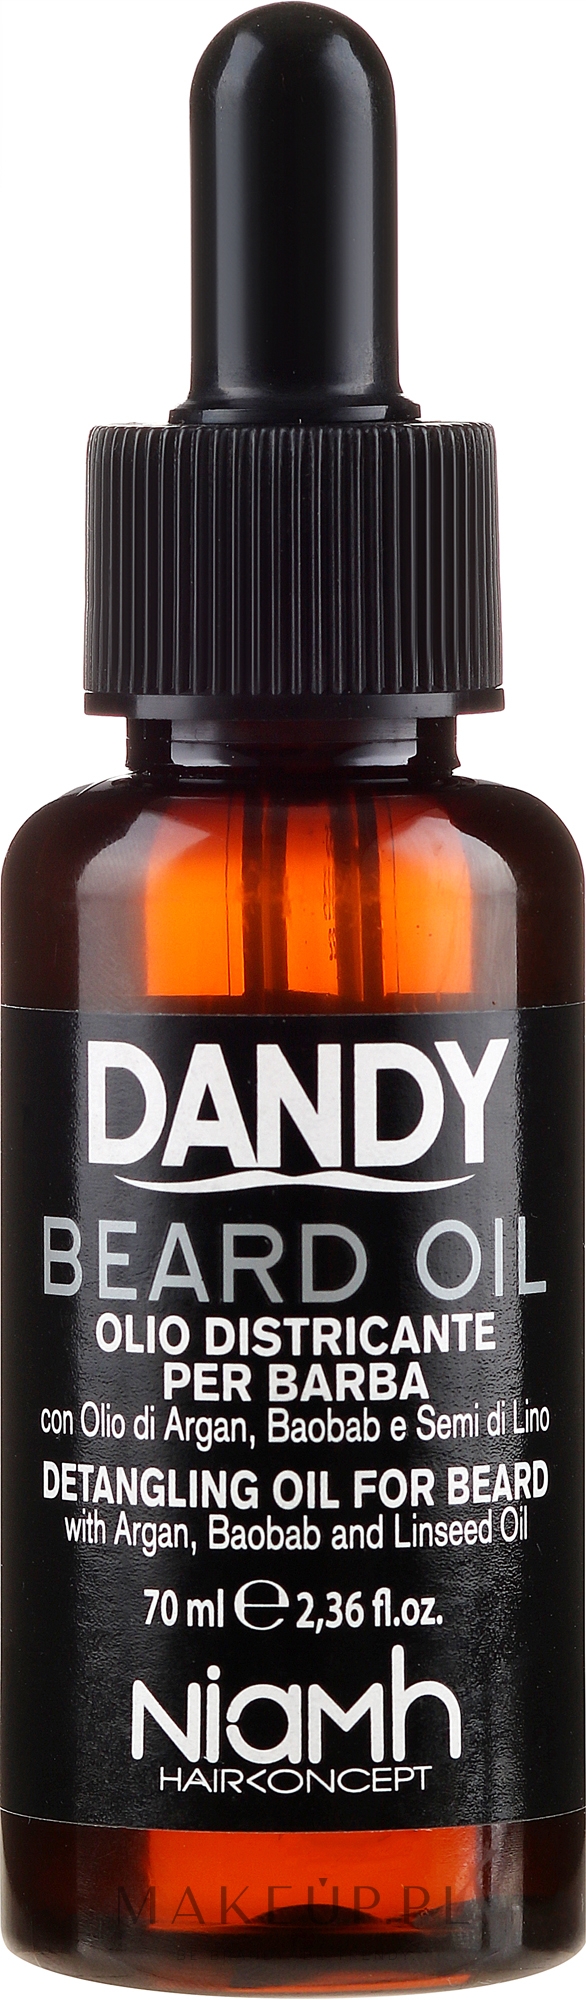 dandy beard & hair shampoo szampon do włosów i brody